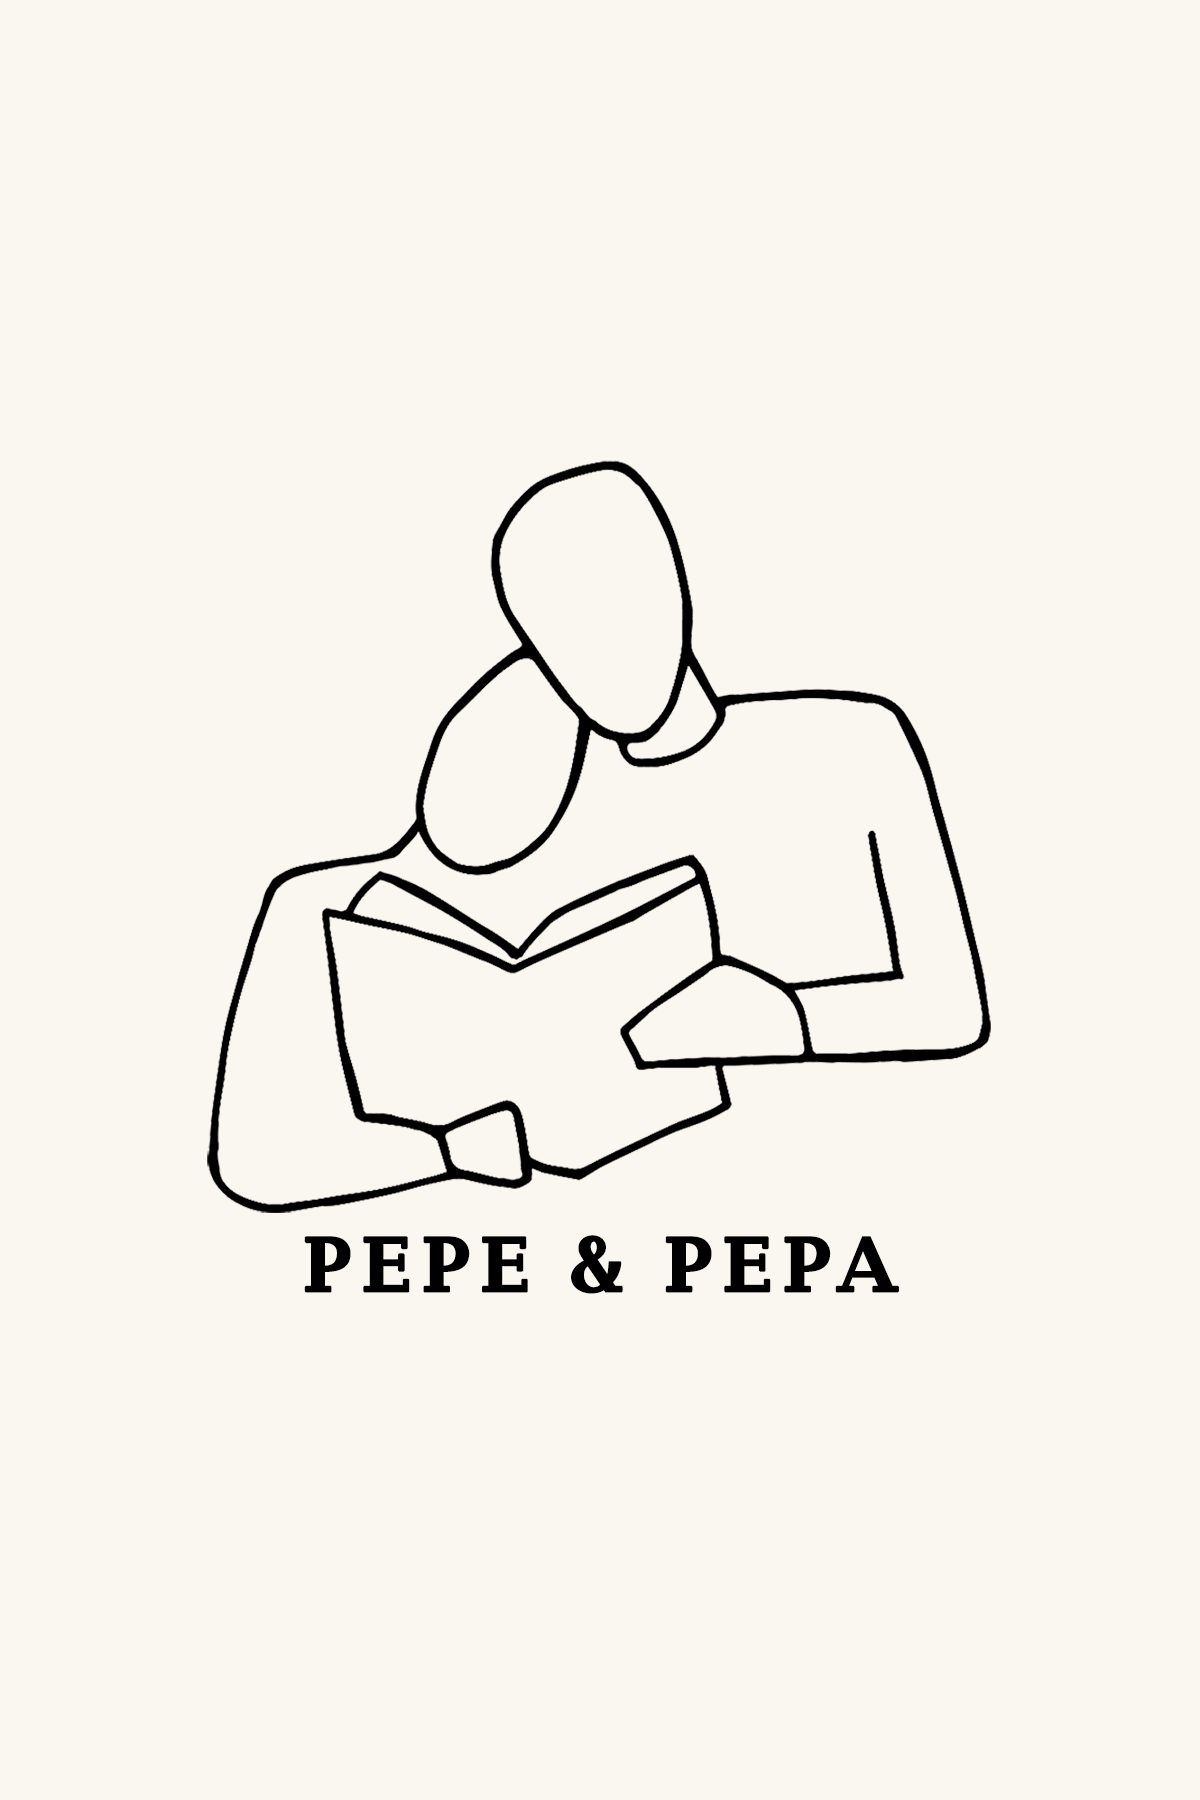 Dibujo de dos personas leyendo juntas un libro